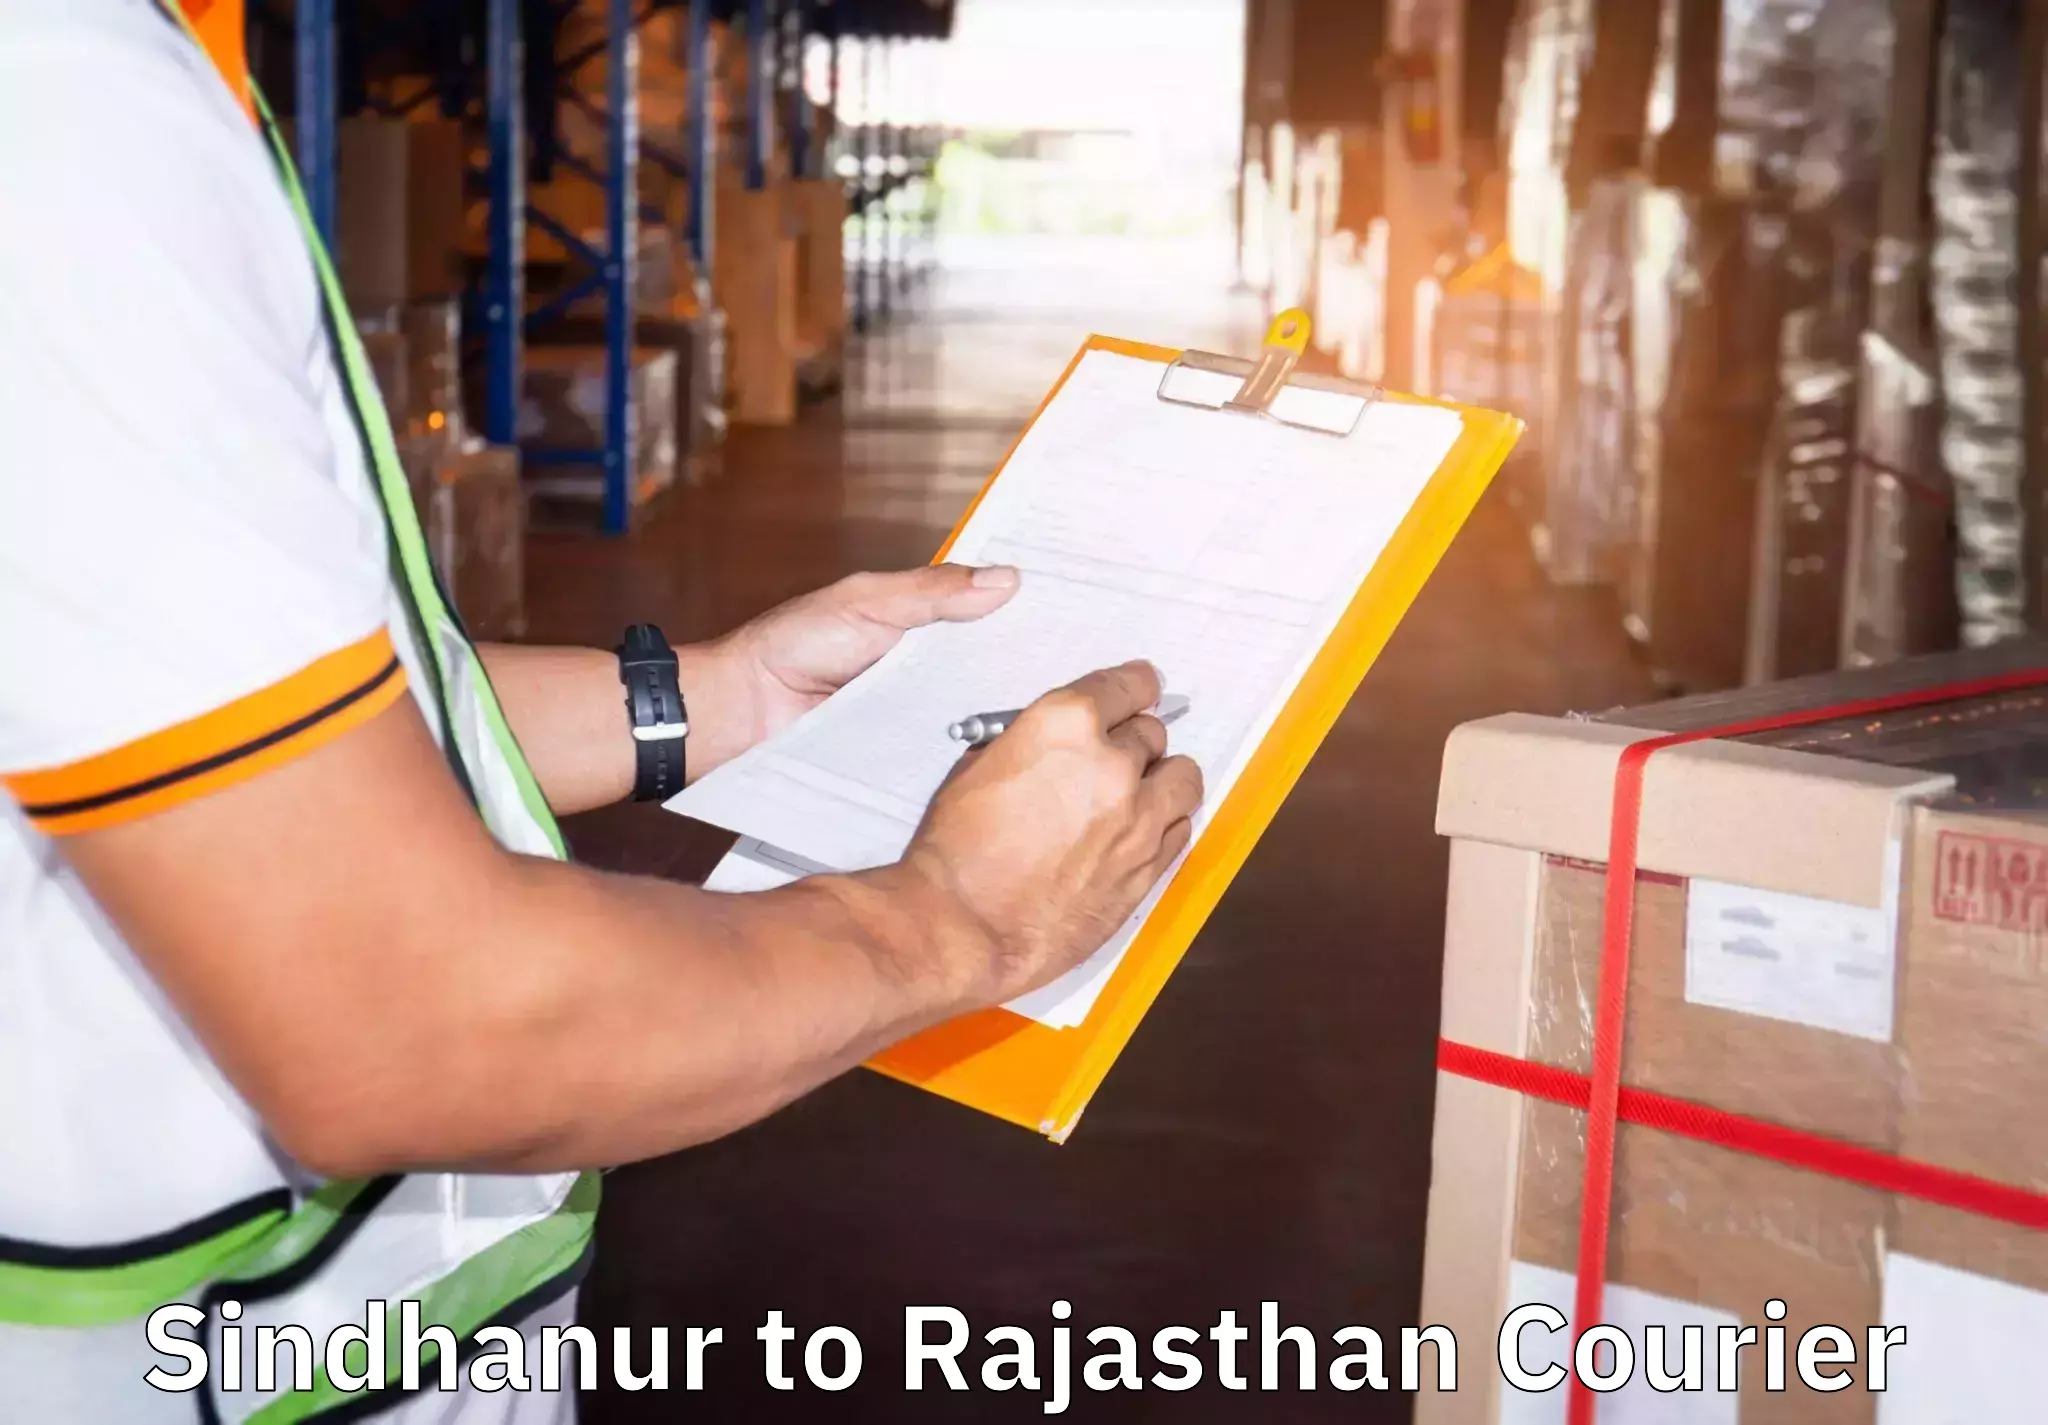 Moving and storage services Sindhanur to Taranagar